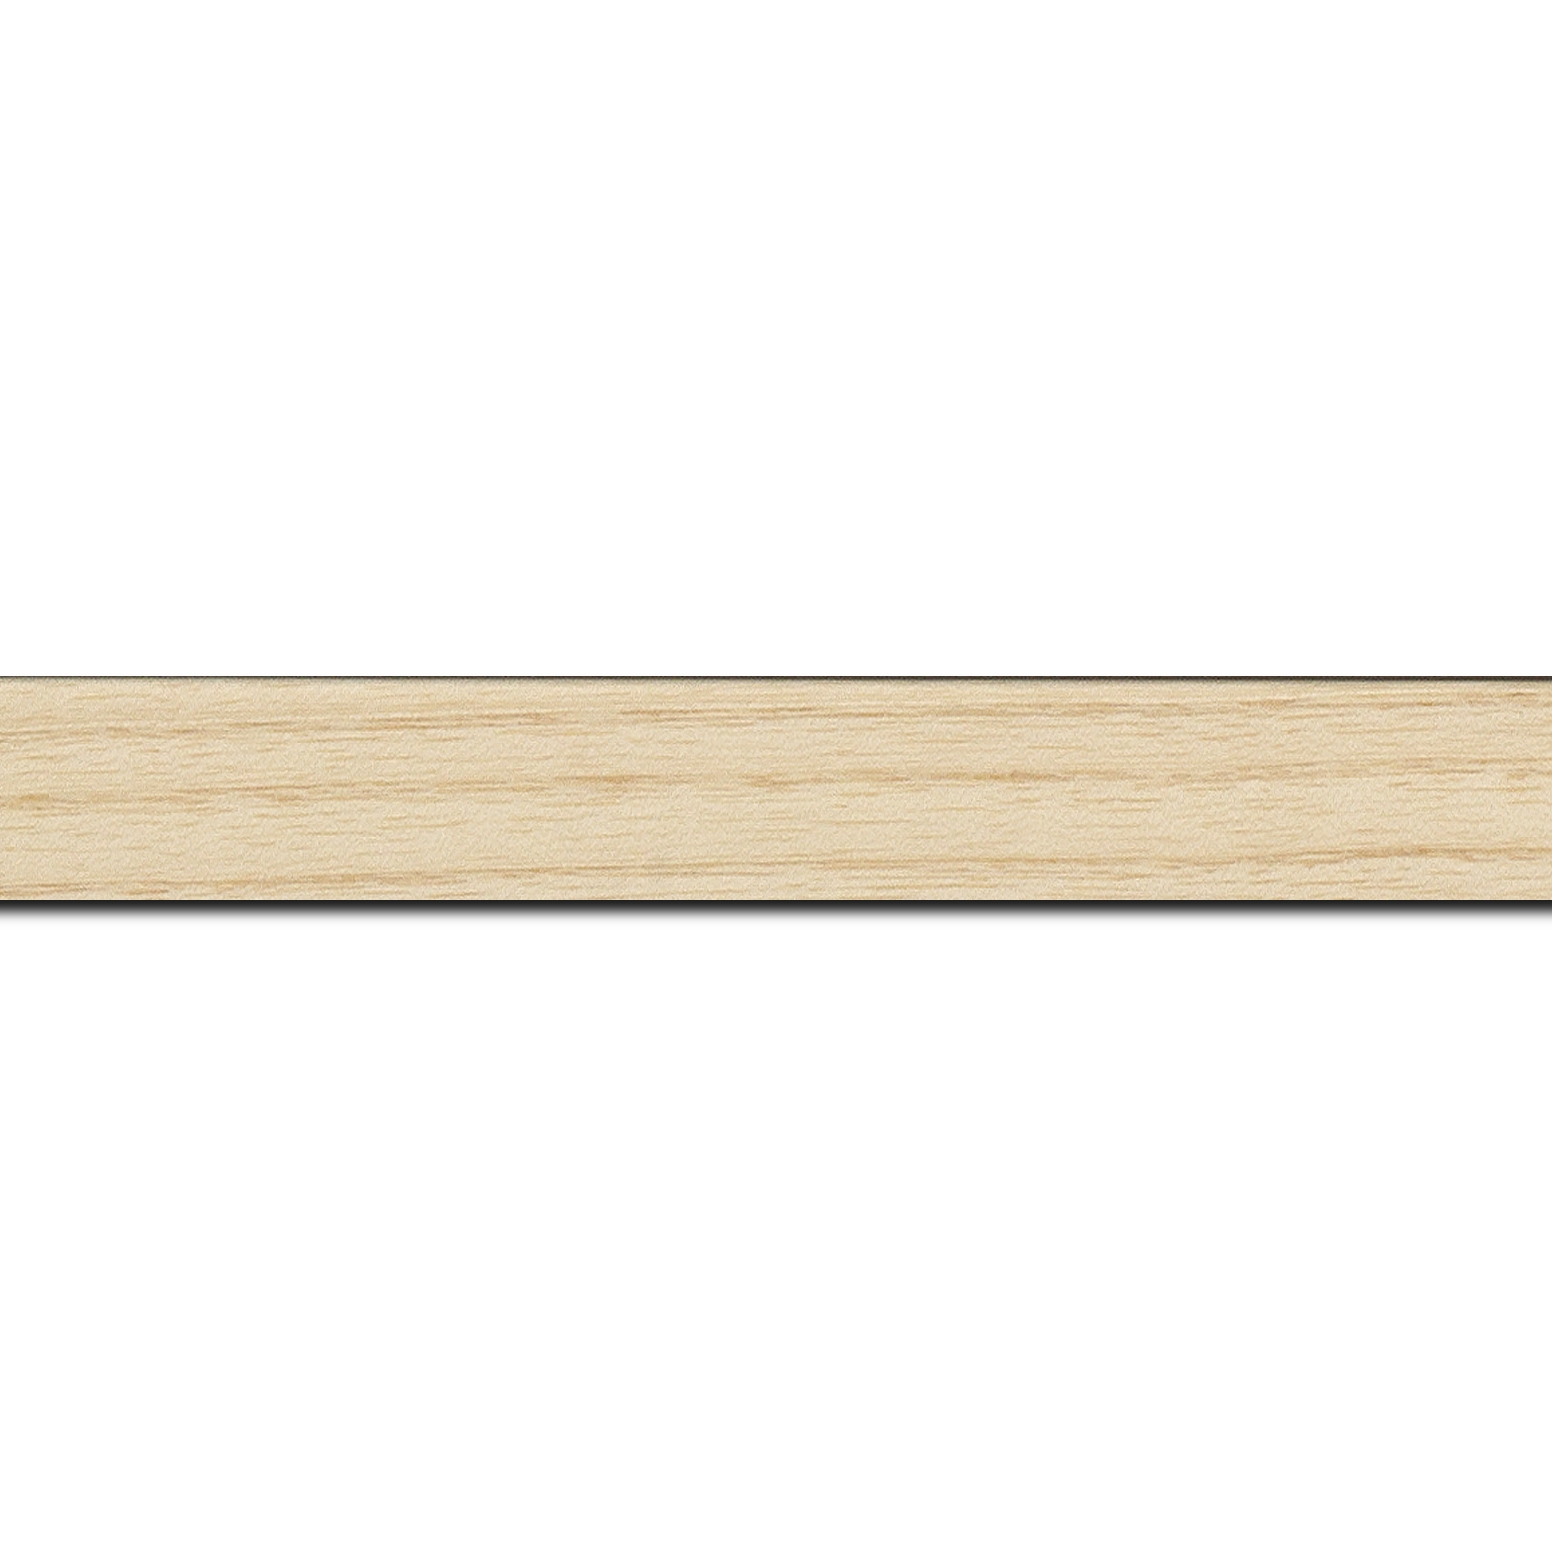 Pack par 12m, bois profil plat largeur 2.5cm plaquage haut de gamme frêne naturel(longueur baguette pouvant varier entre 2.40m et 3m selon arrivage des bois)